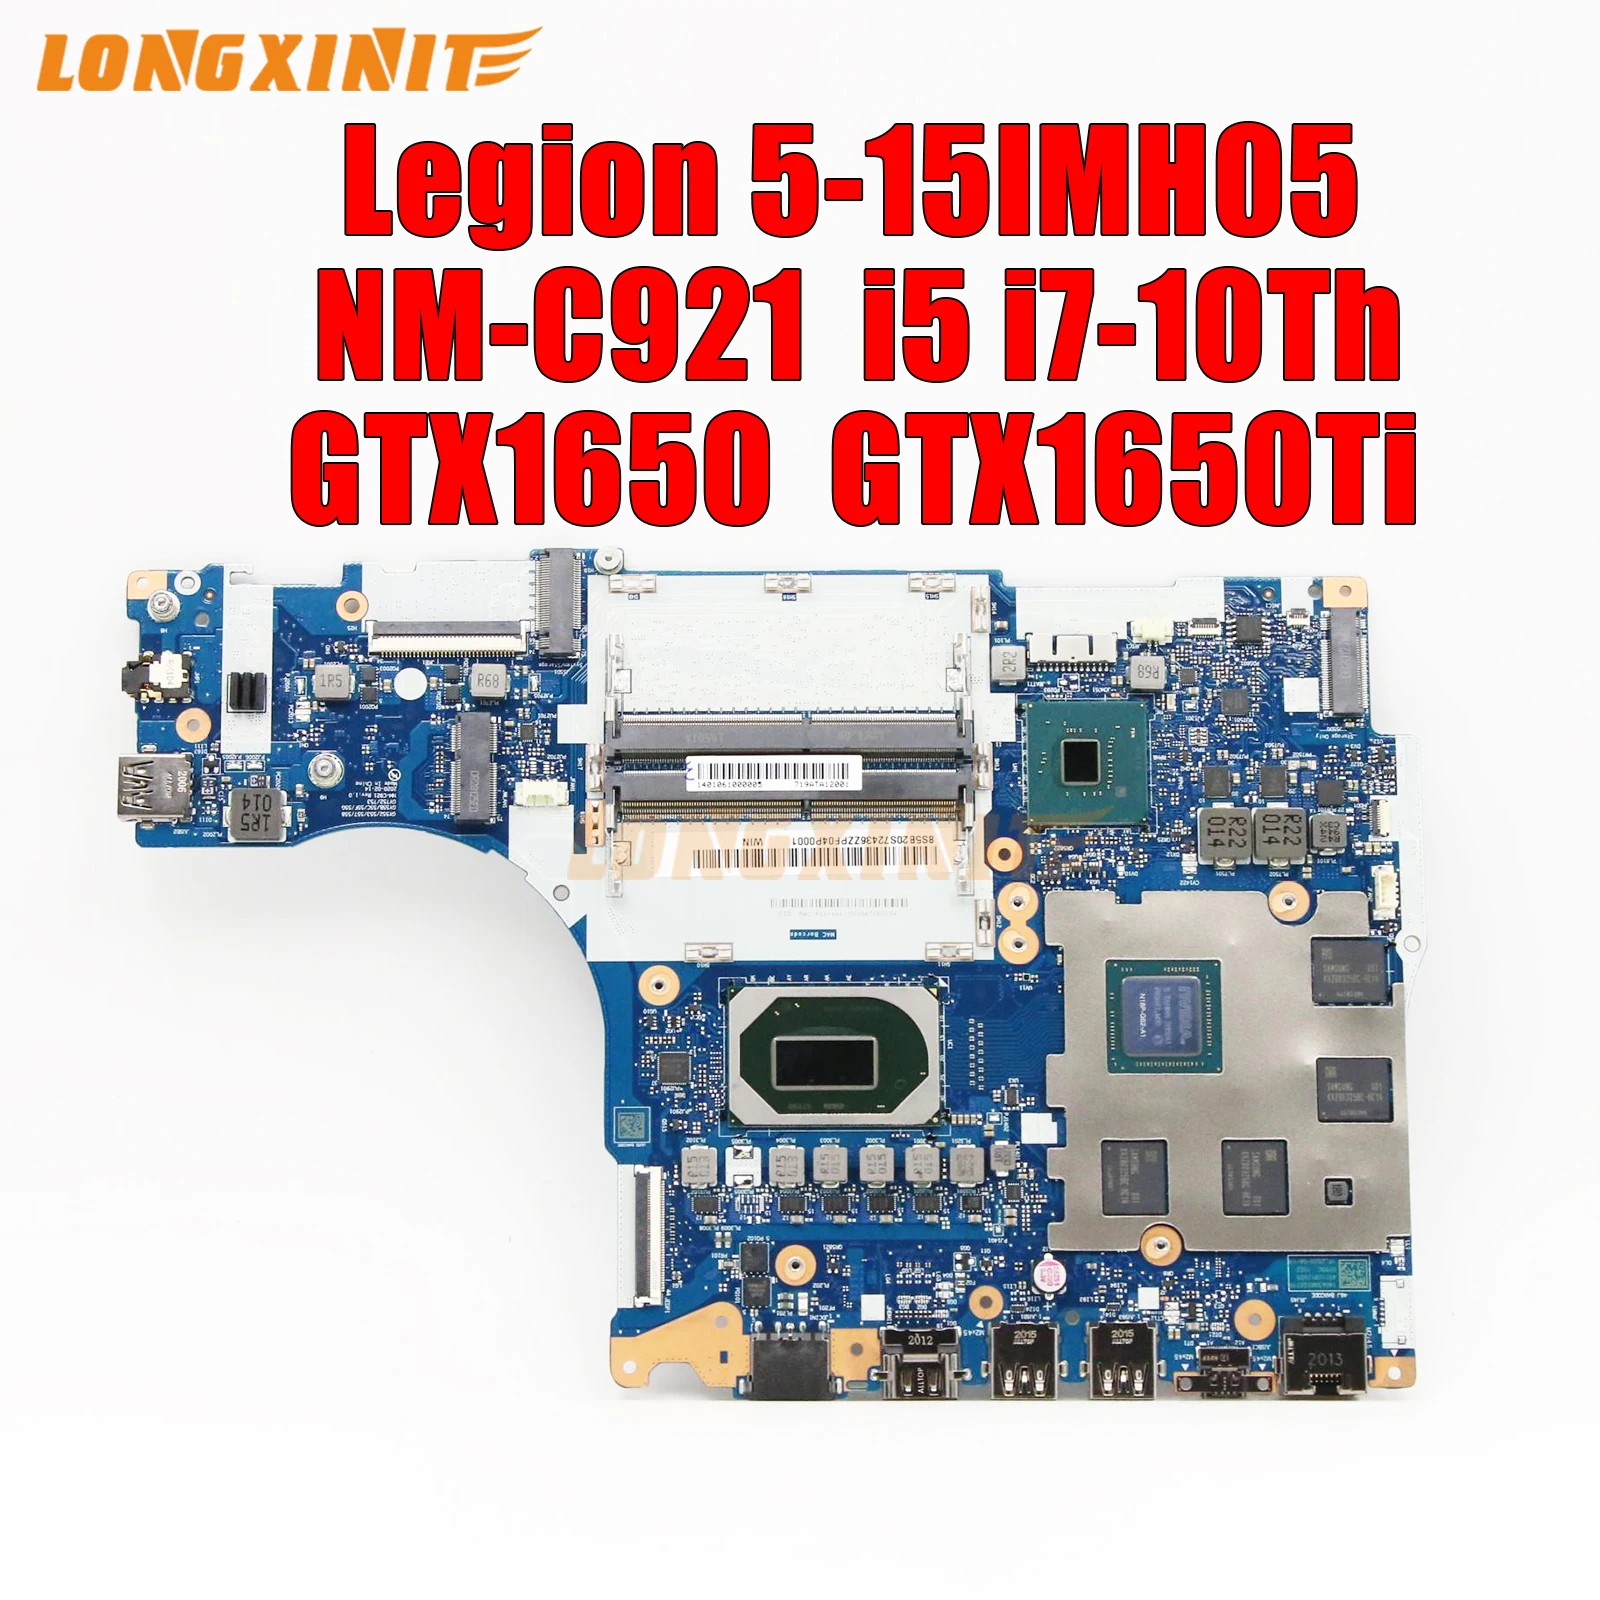 

NM-C921 NMC921.For Lenovo Legion 5-15IMH05 Laptop Motherboard. I5-10200H I7-10750H GPU GTX1650/GTX1650Ti 4G teste 100%.